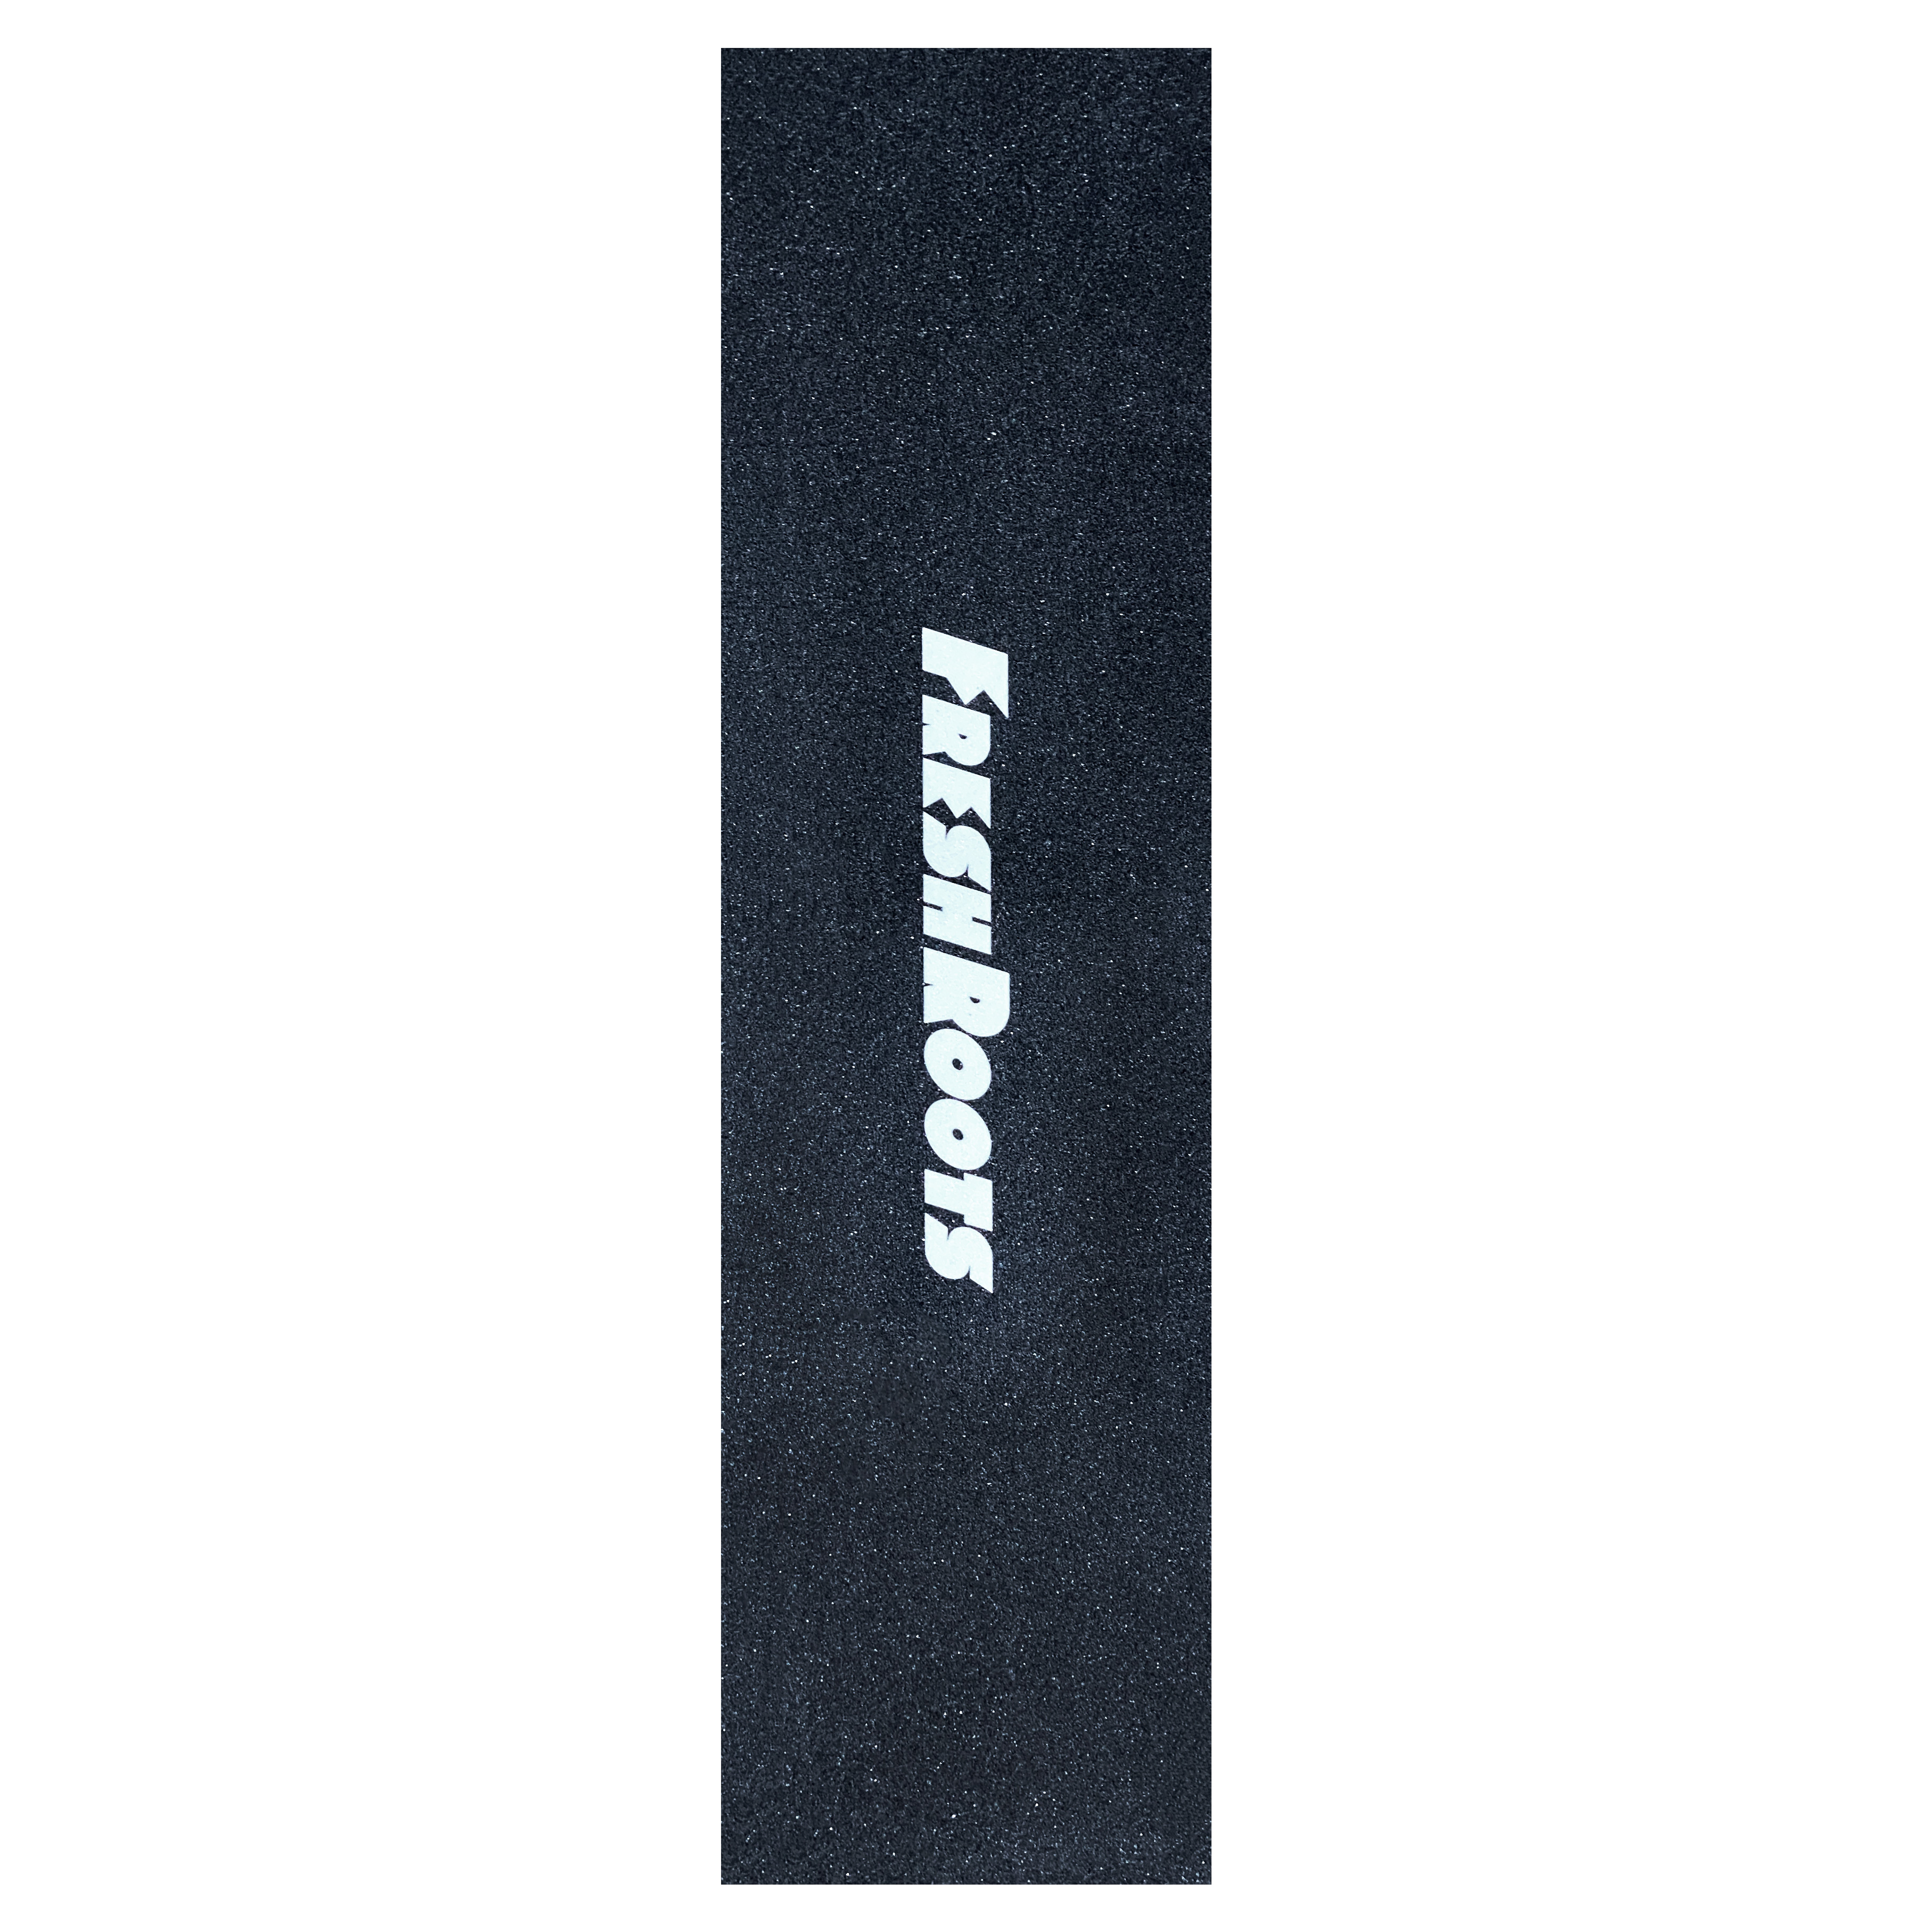 freshroots logo skateboard griptape